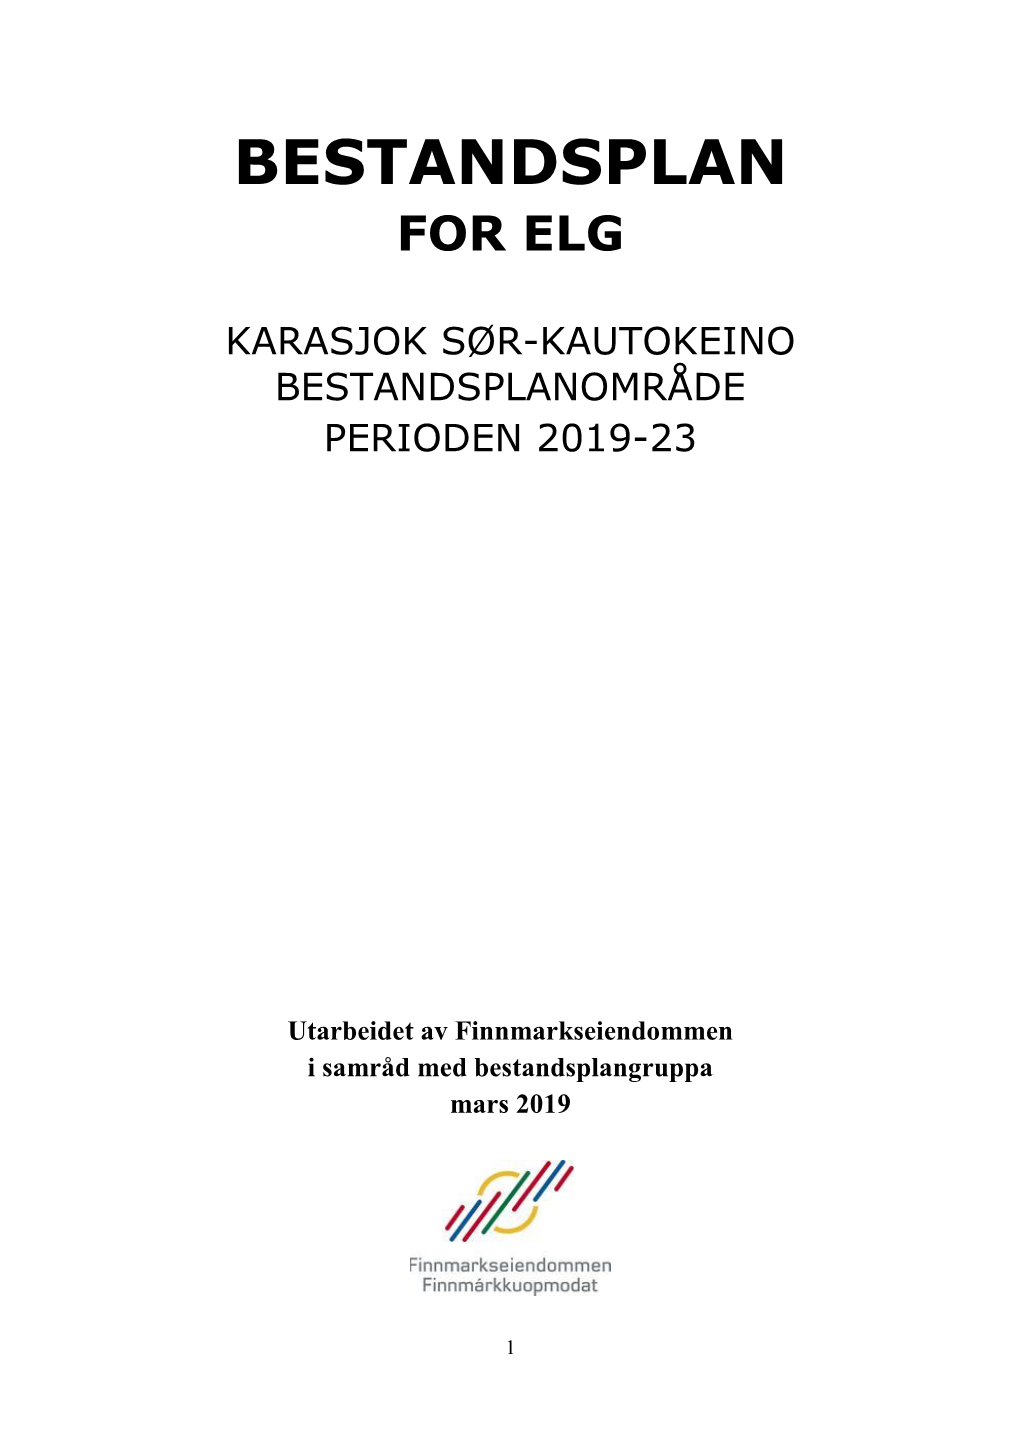 Bestandsplan 2019-2023 Karasjok Sør-Kautokeino (PDF, 524